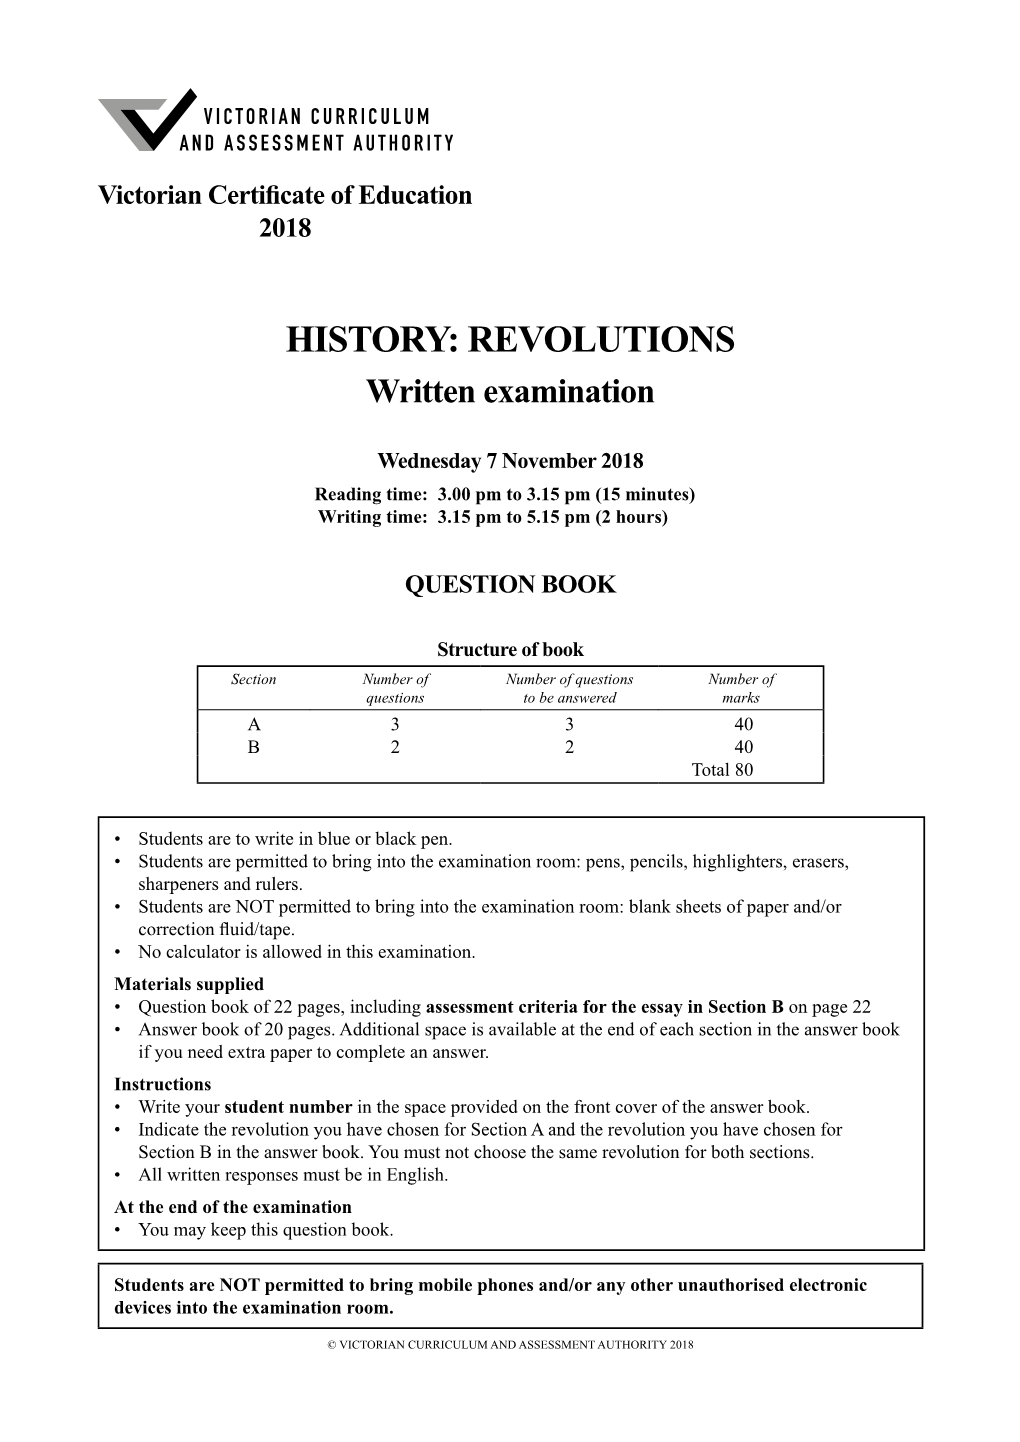 2018 History: Revolutions Written Examination